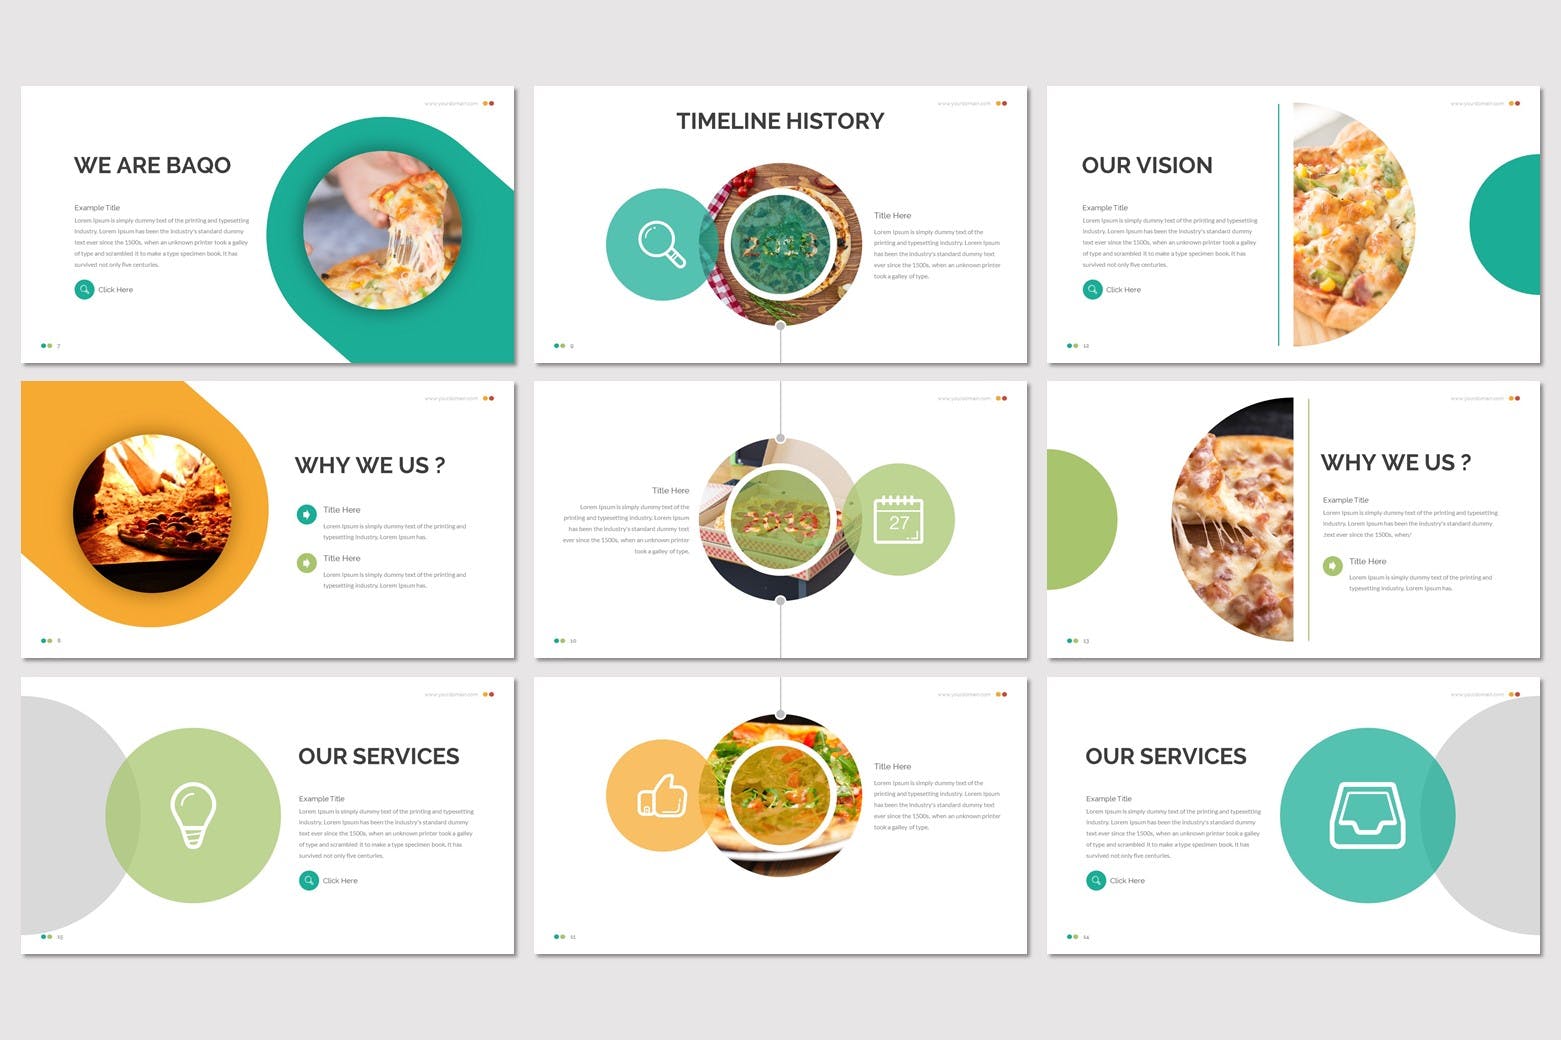 幻灯片模板美食展示PowerPoint下载 Baqo – Food Powerpoint Template设计素材模板